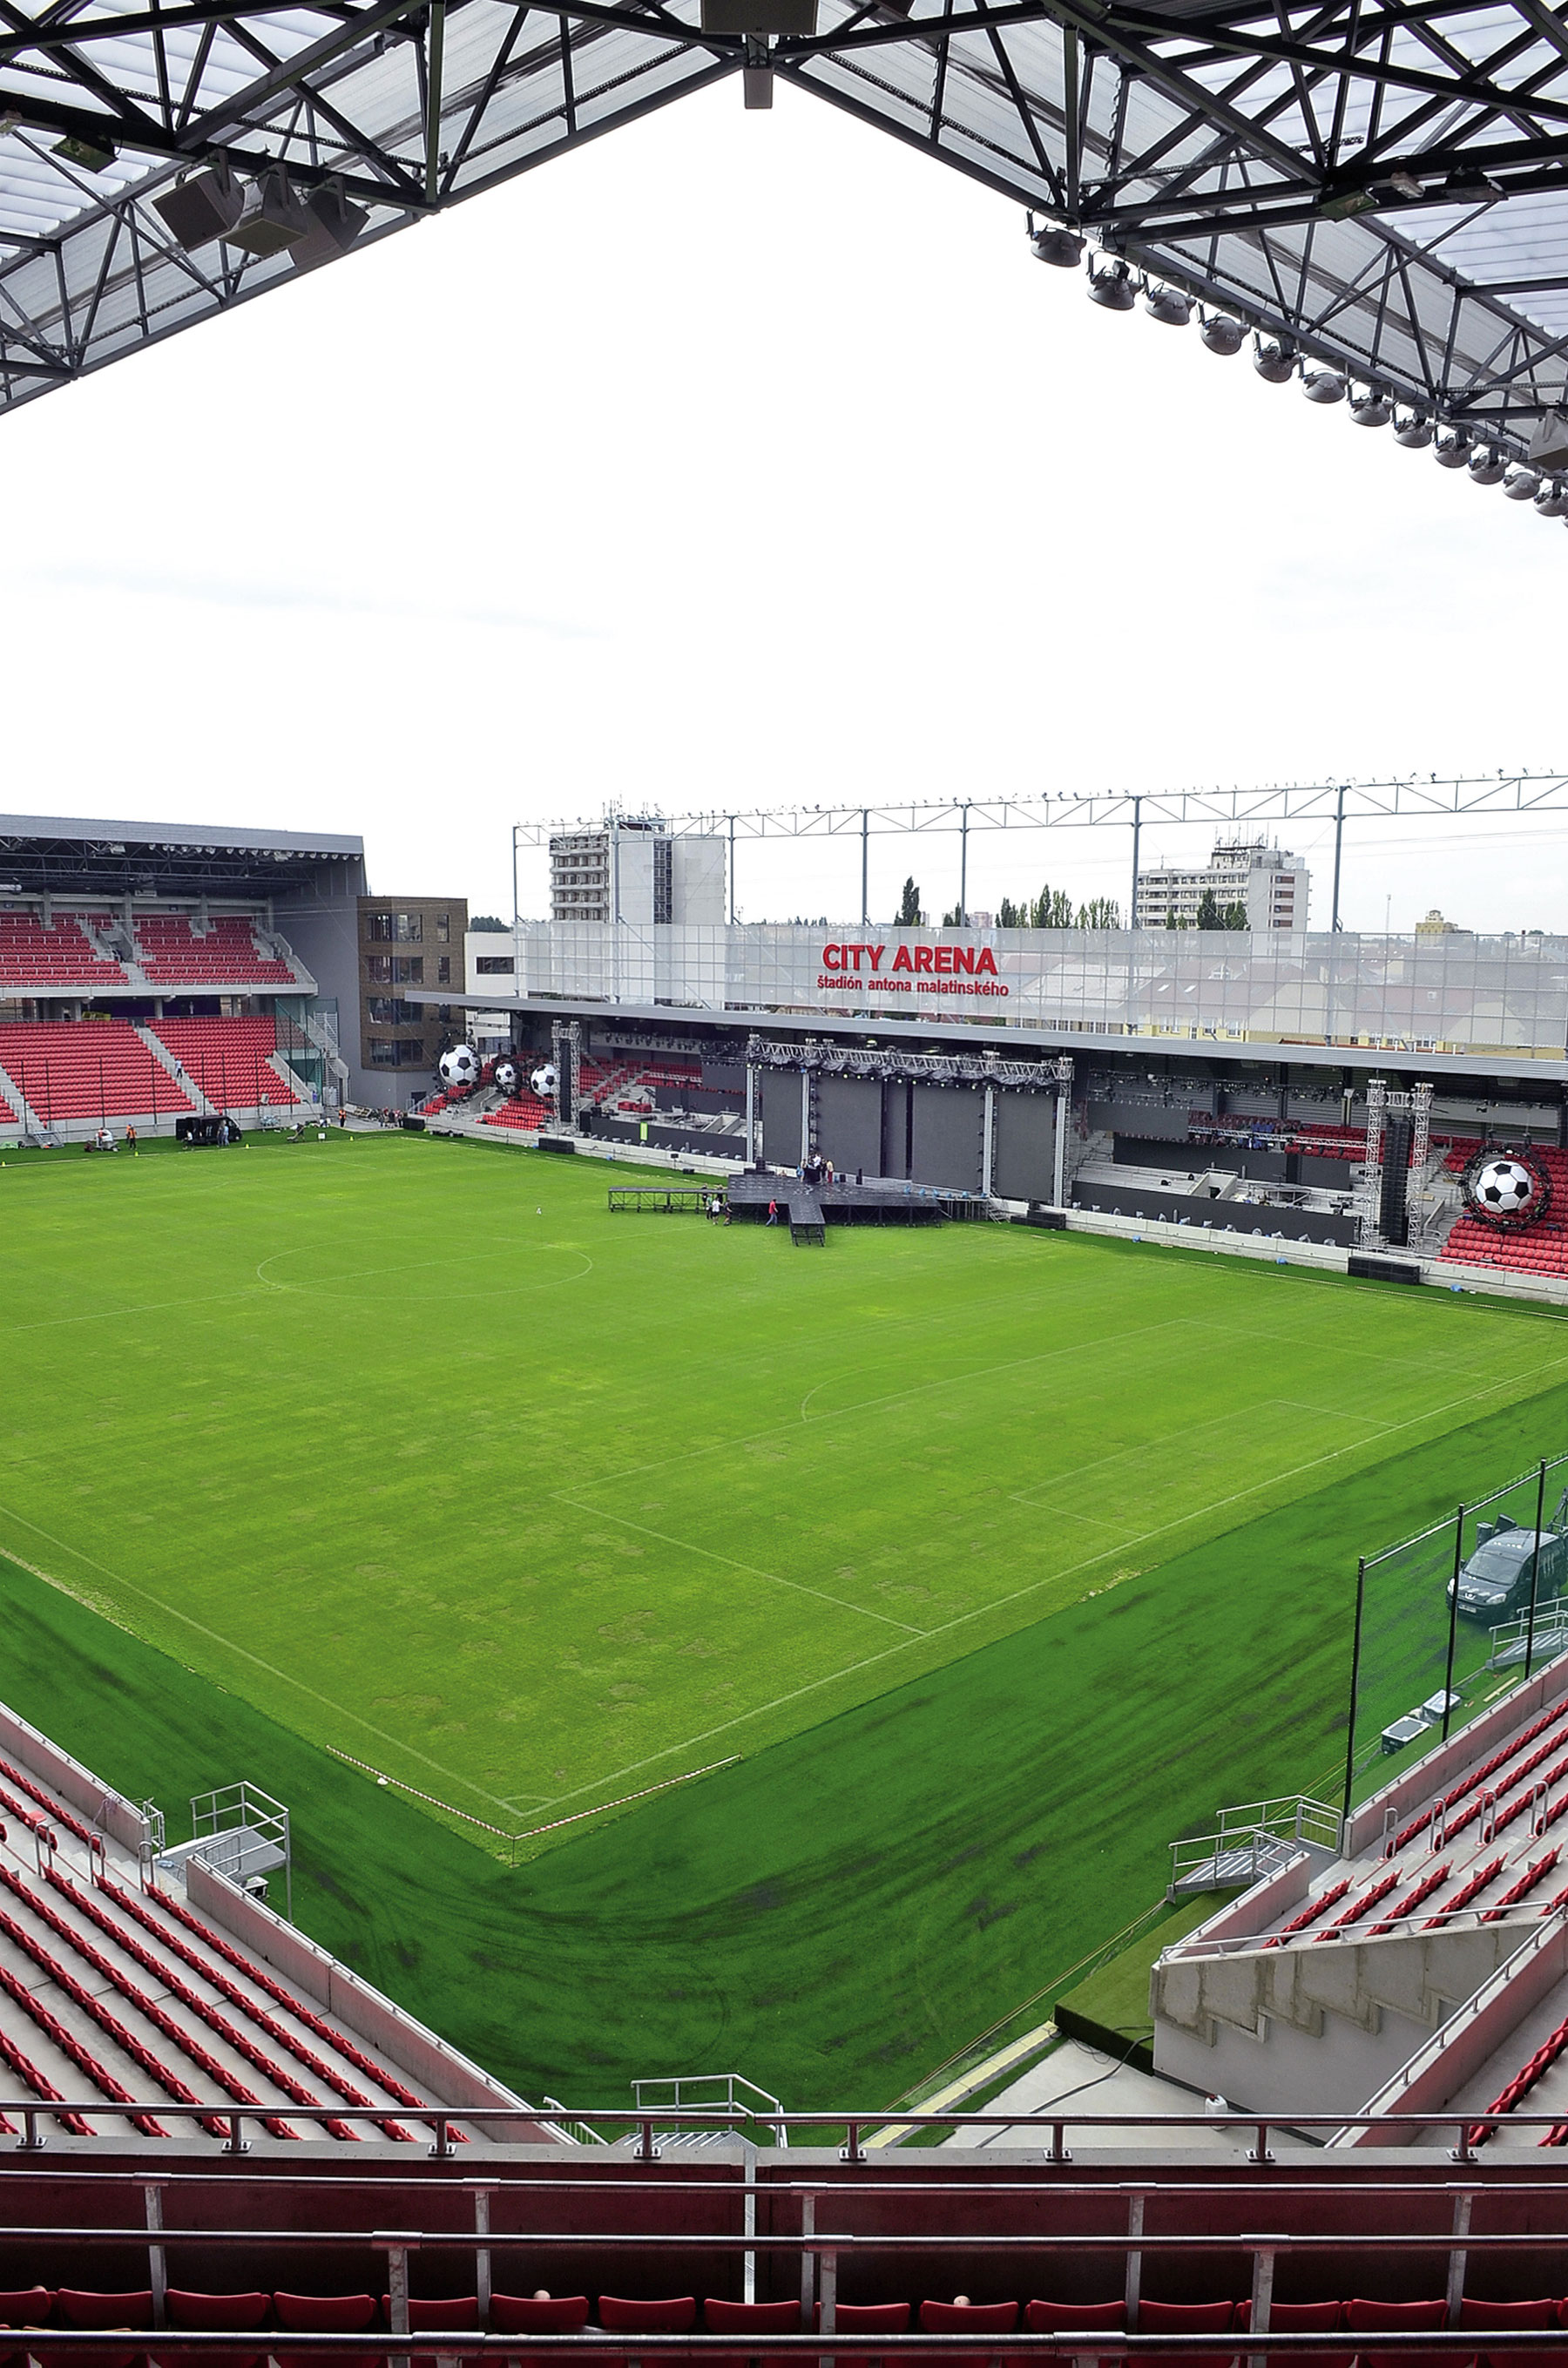 Futbalový štadión nemá v slovenských pomeroch obdobu a nadlho zostane neprekonaným stropom úrovne.